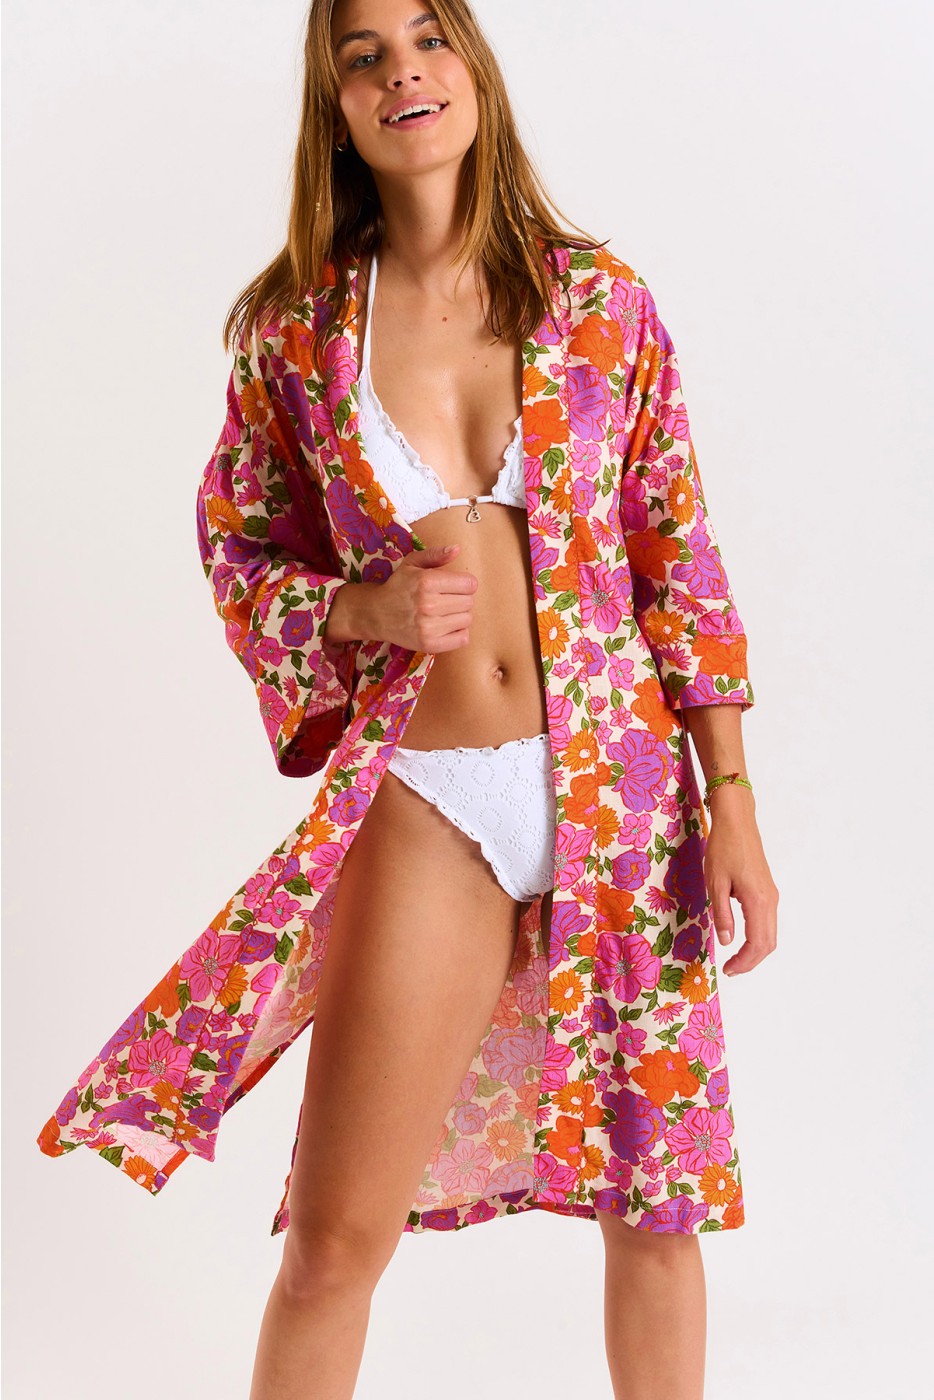 Austinday Keiko ecru kimono with pink-toned floral print